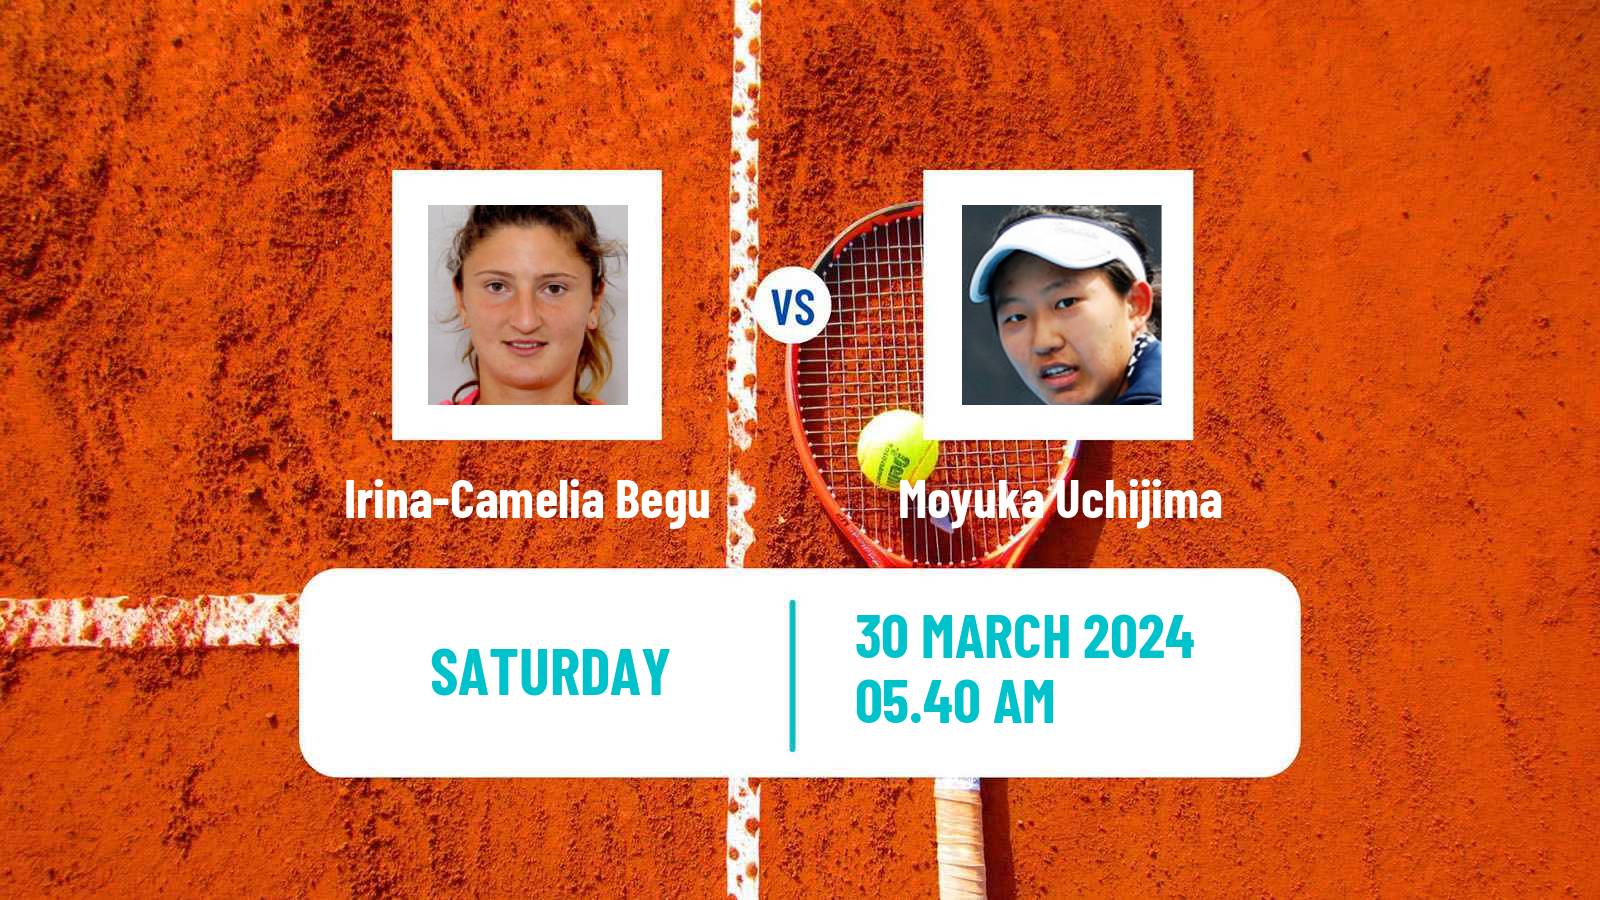 Tennis Antalya Challenger Women Irina-Camelia Begu - Moyuka Uchijima